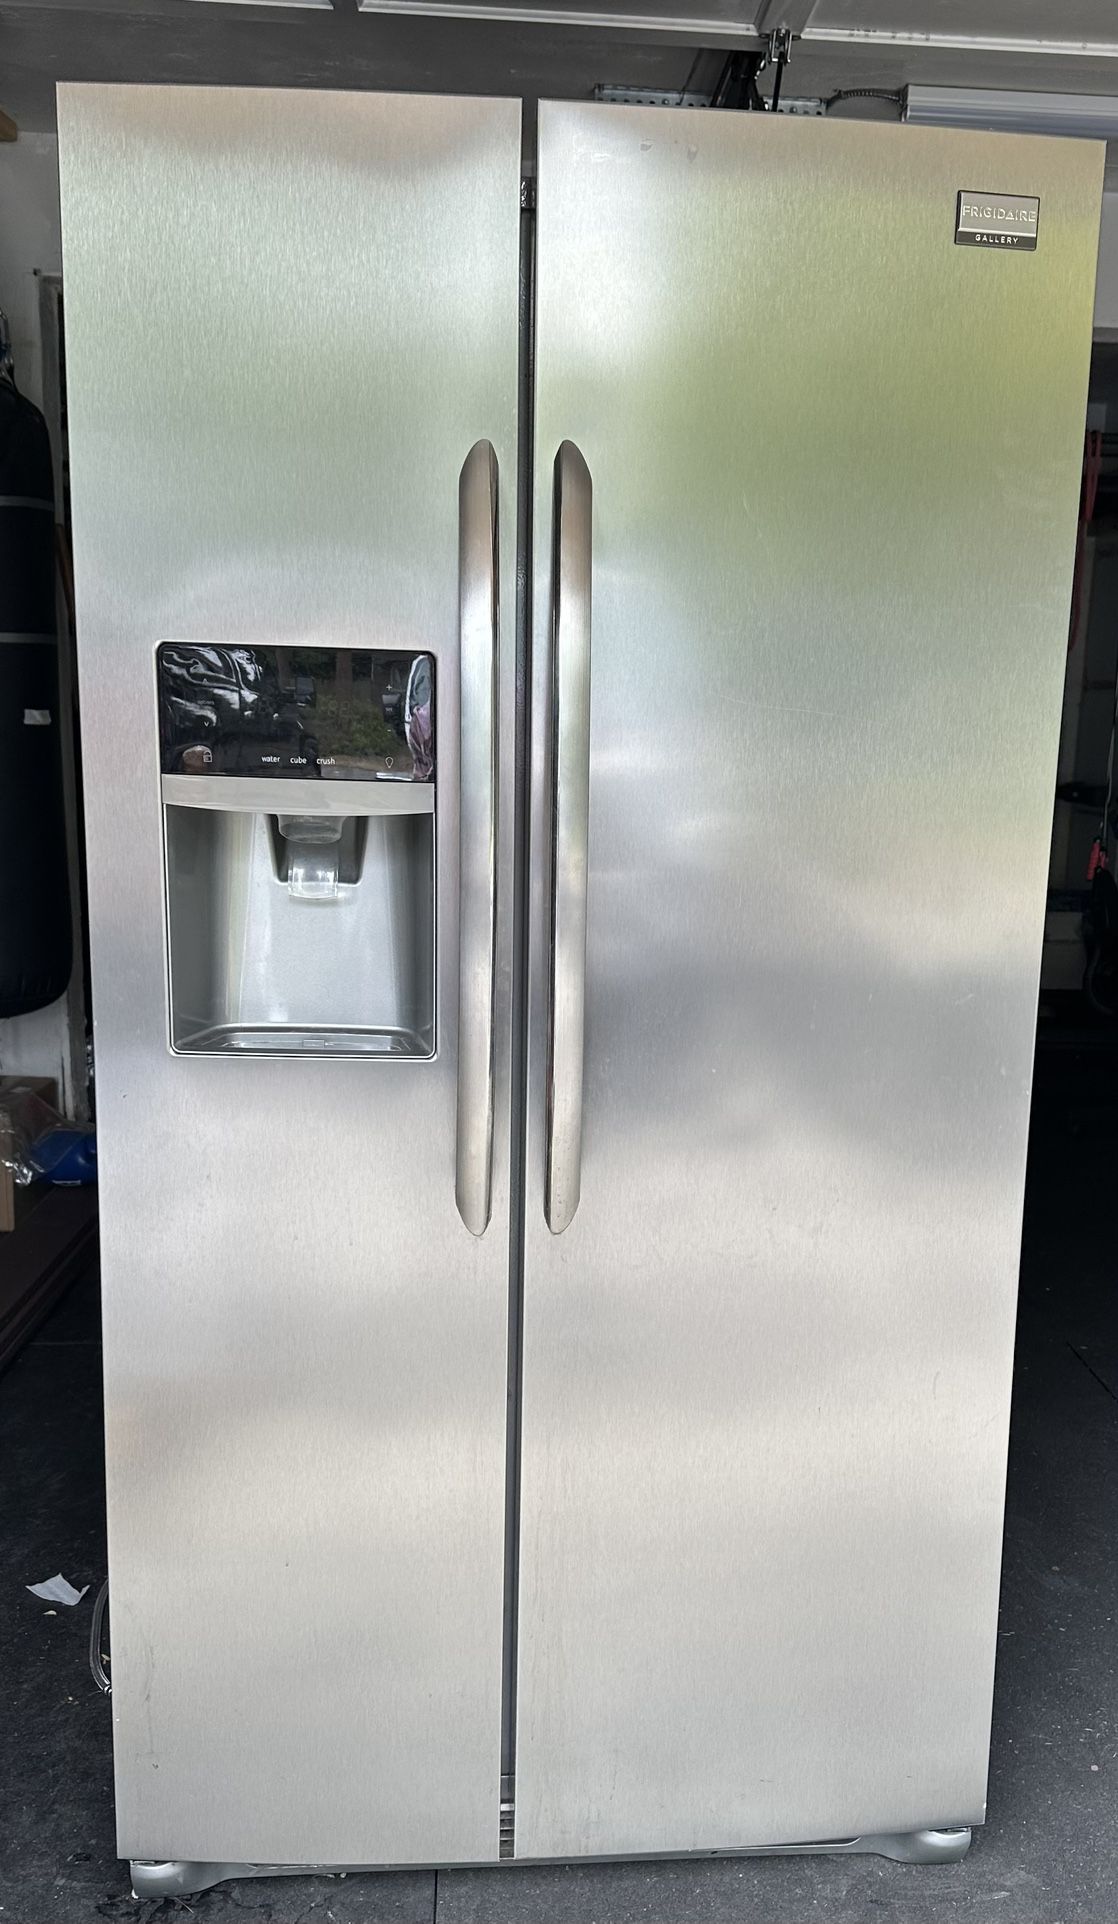 Fridgidaire Refrigerator And Freezer